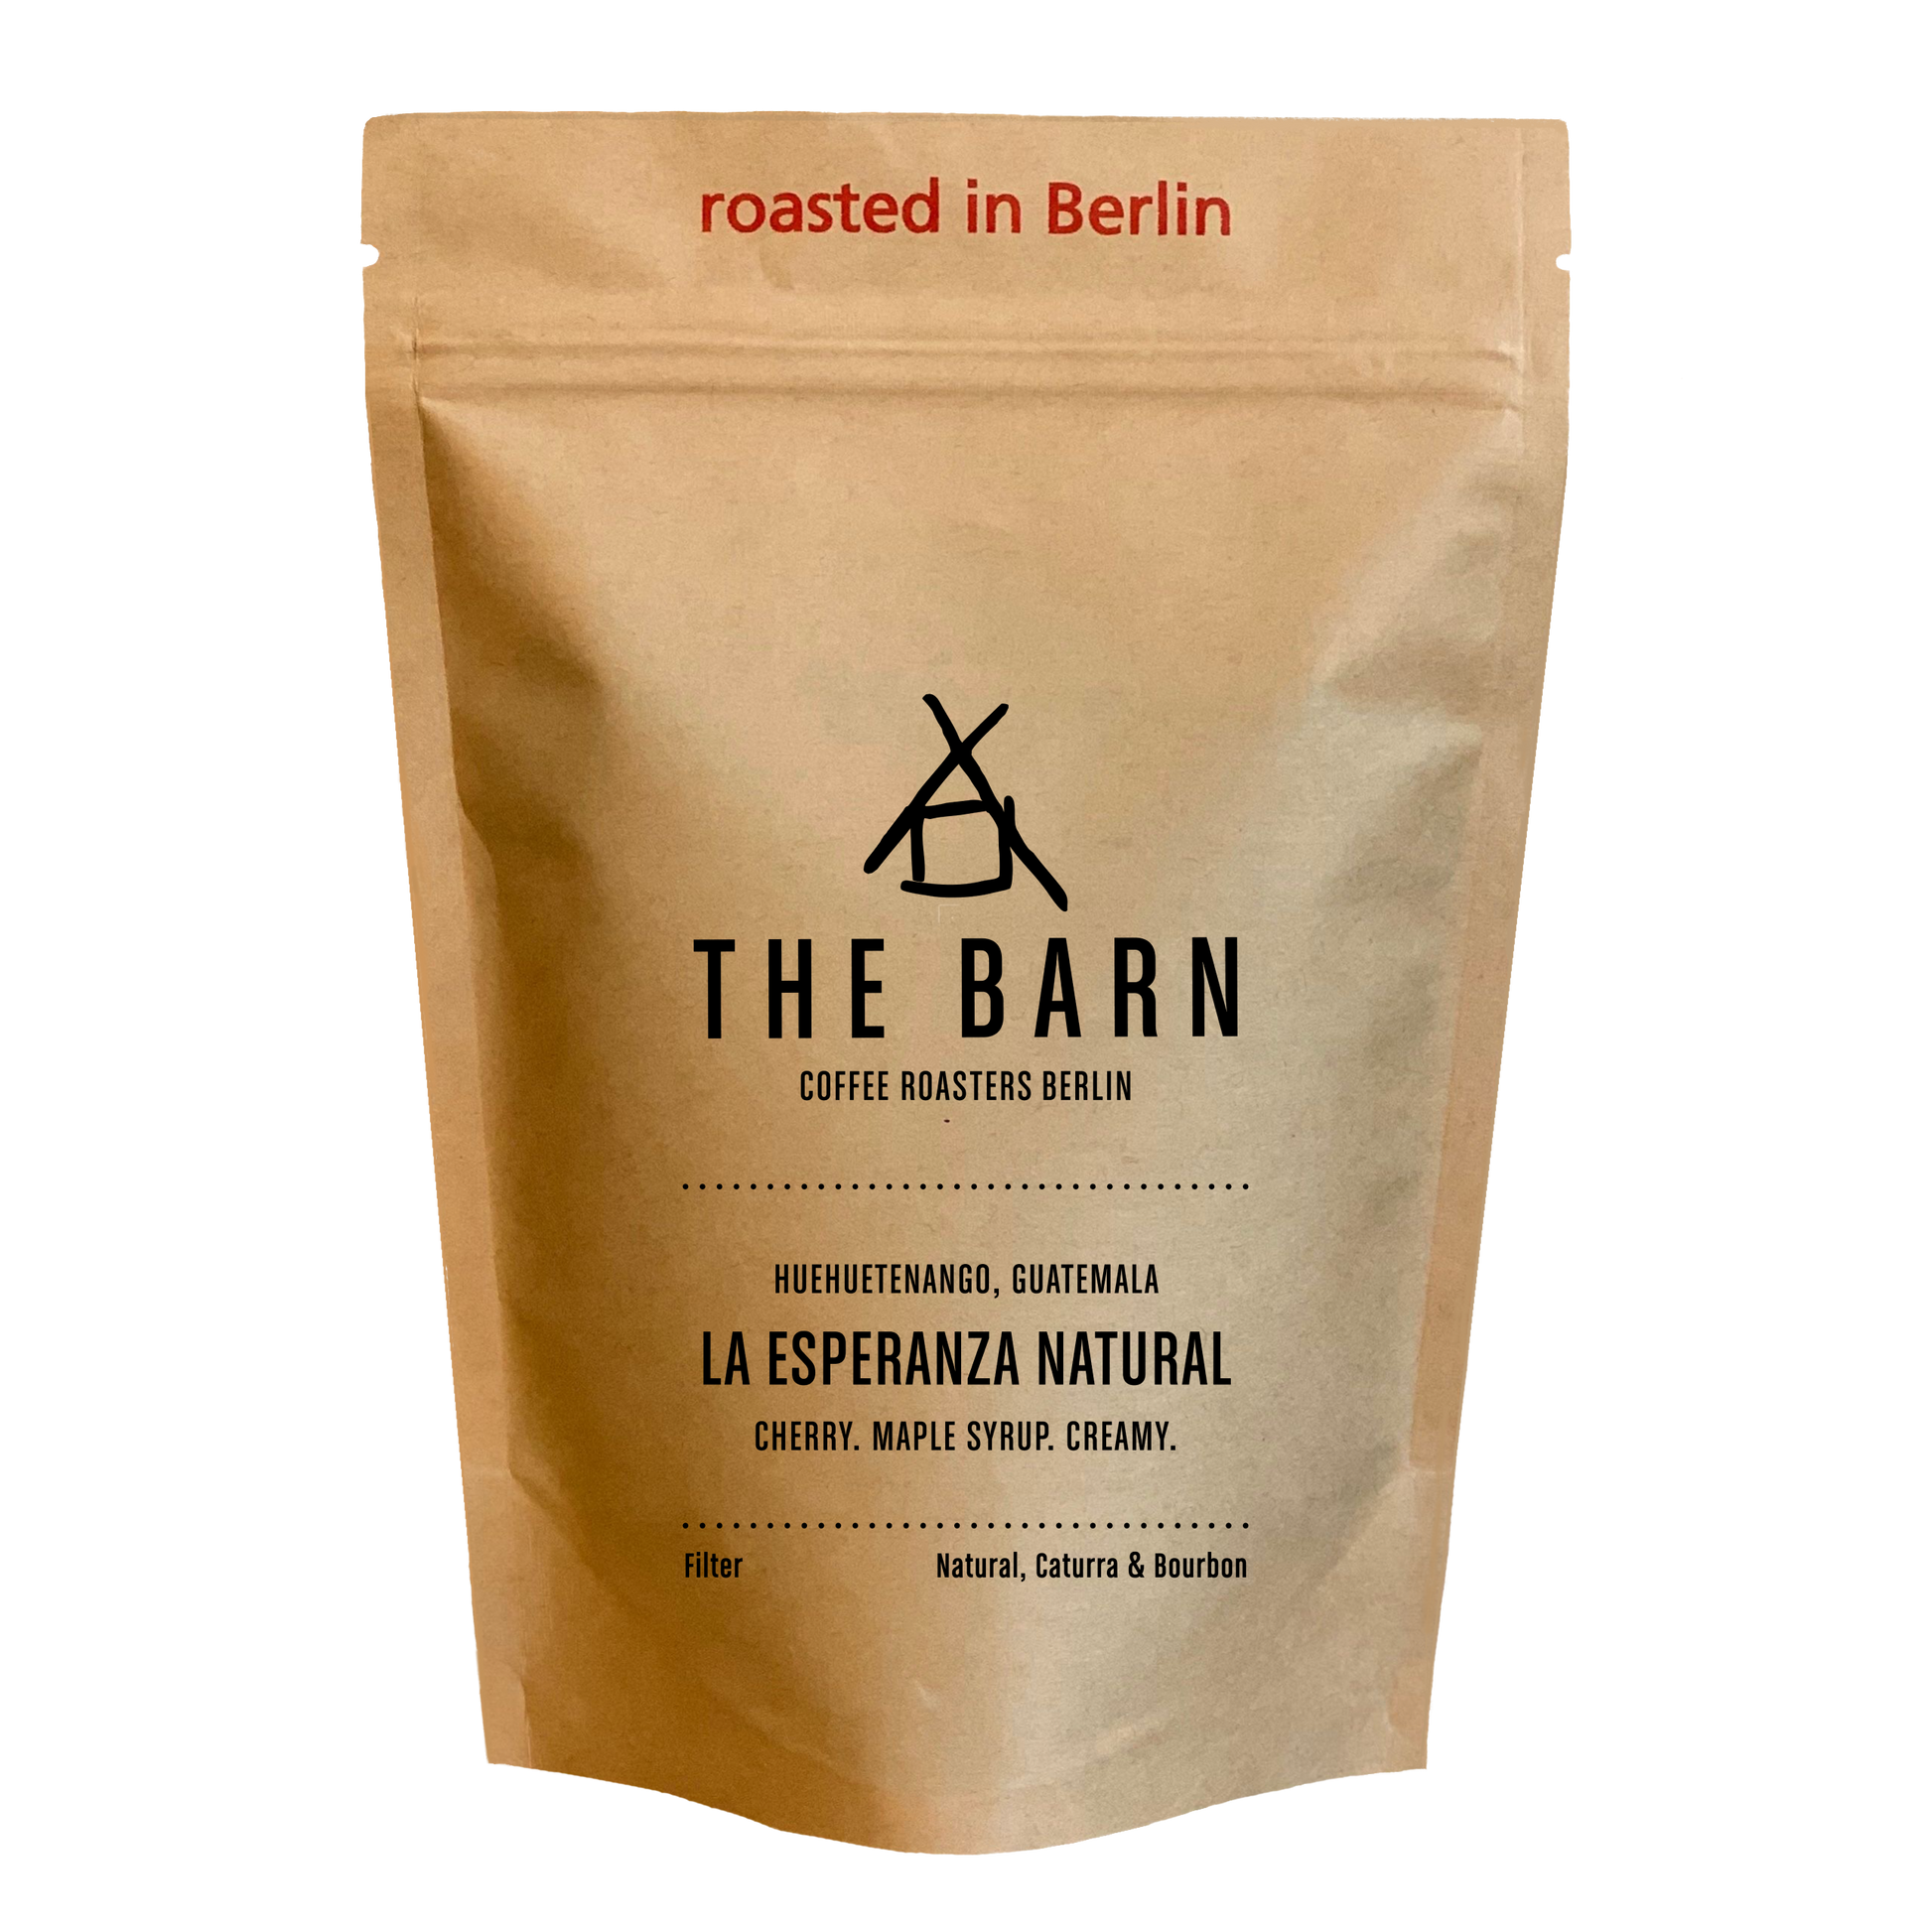 250g bag of La Esperanza Natural coffee beans